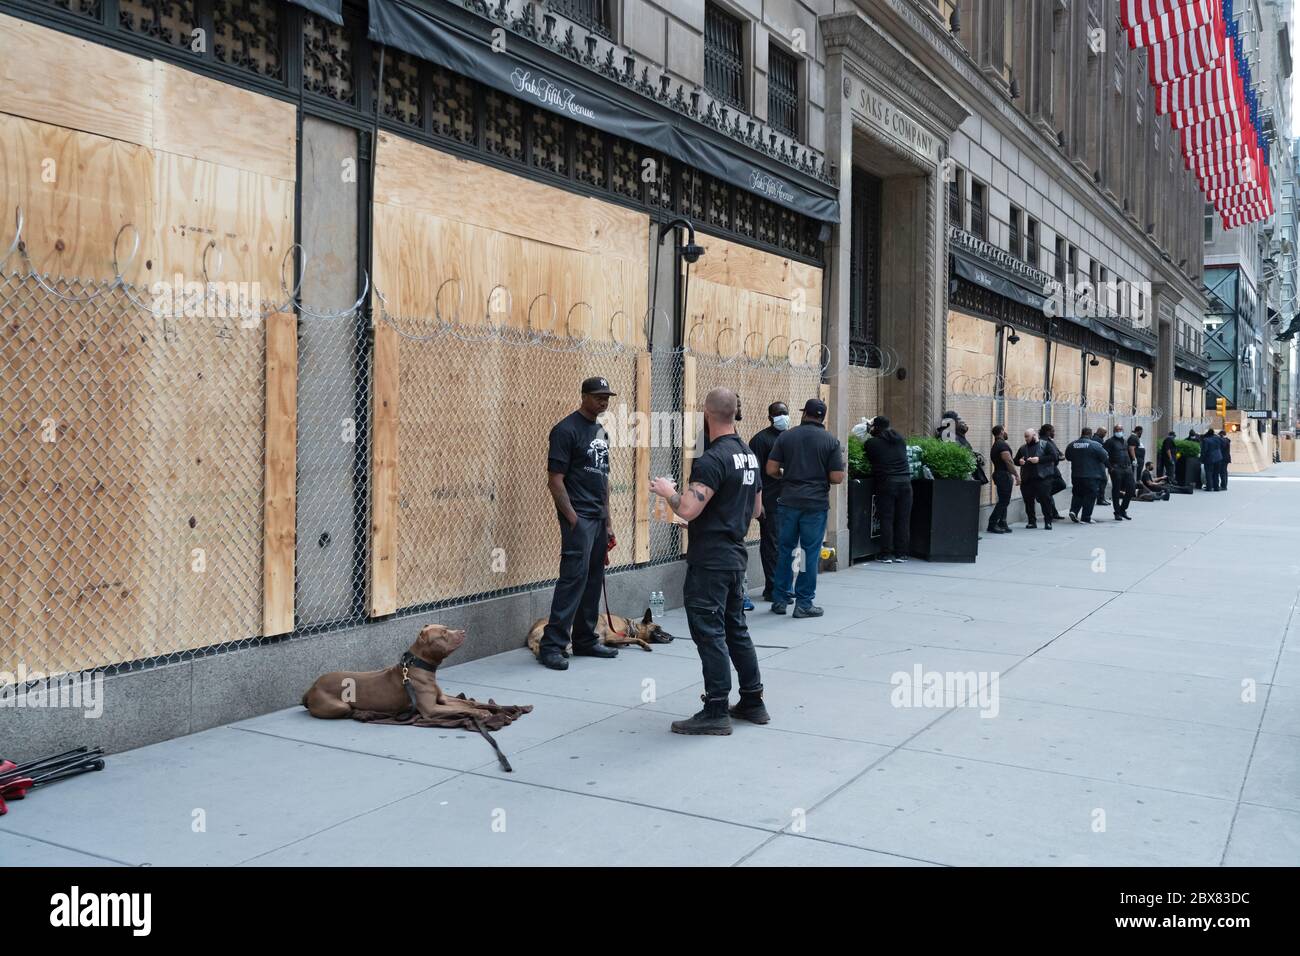 NEW YORK, NY - JUNI 03: Berühmte Saks Fifth Avenue Bereiten Sie sich auf weitere Plünderungen mit Kettenglied Zaun über den Fenstern und Sicherheitskräfte und d Stockfoto